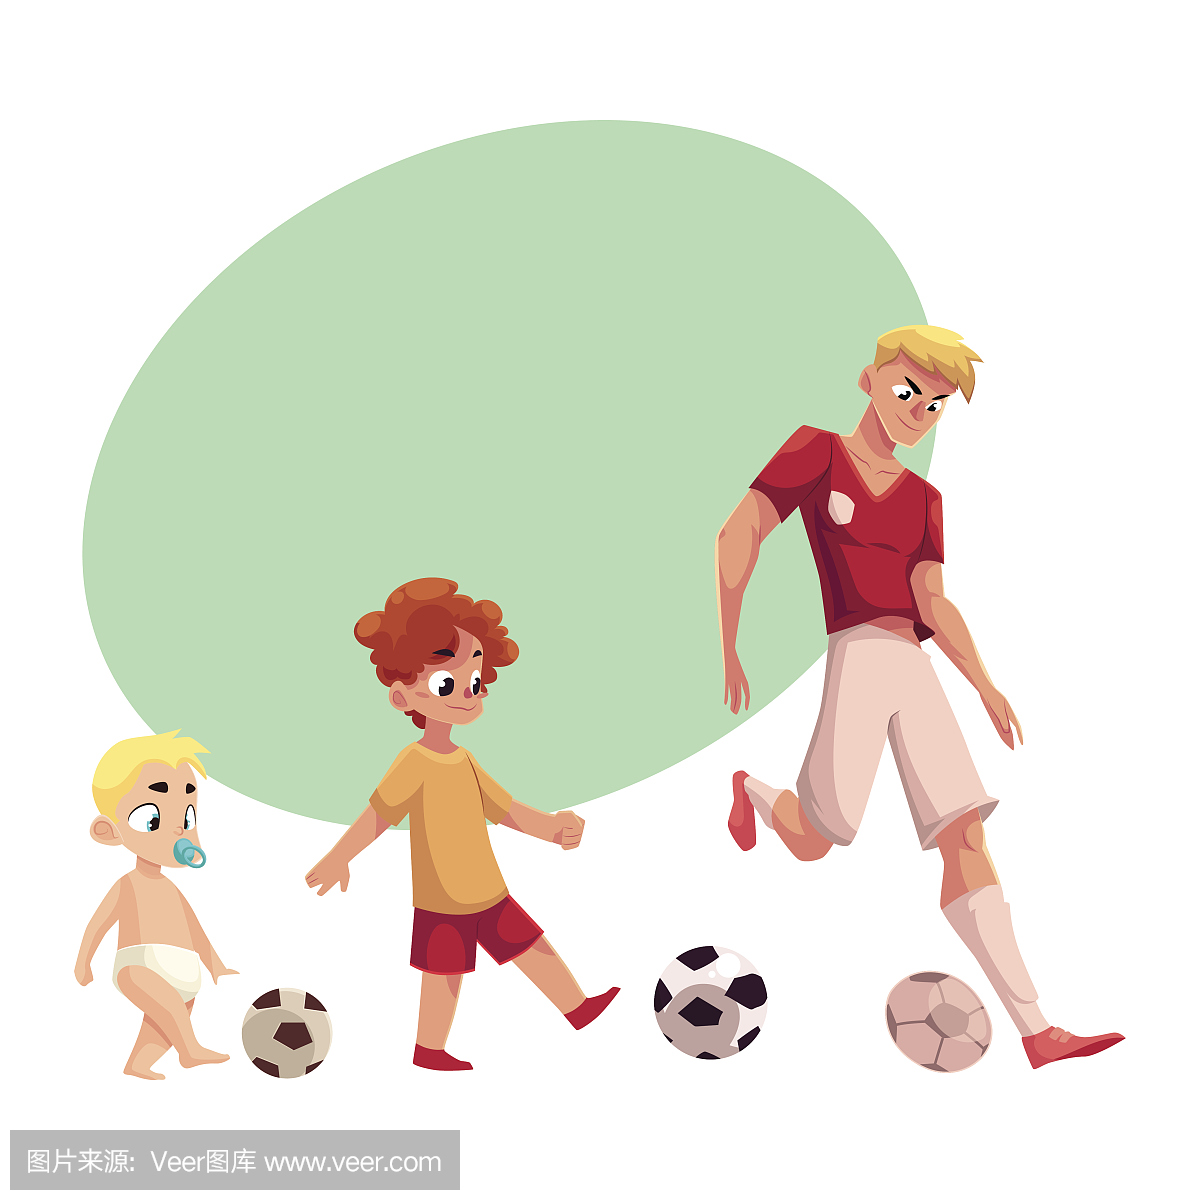 婴儿,小孩和成人足球运动员踢足球,运动为所有